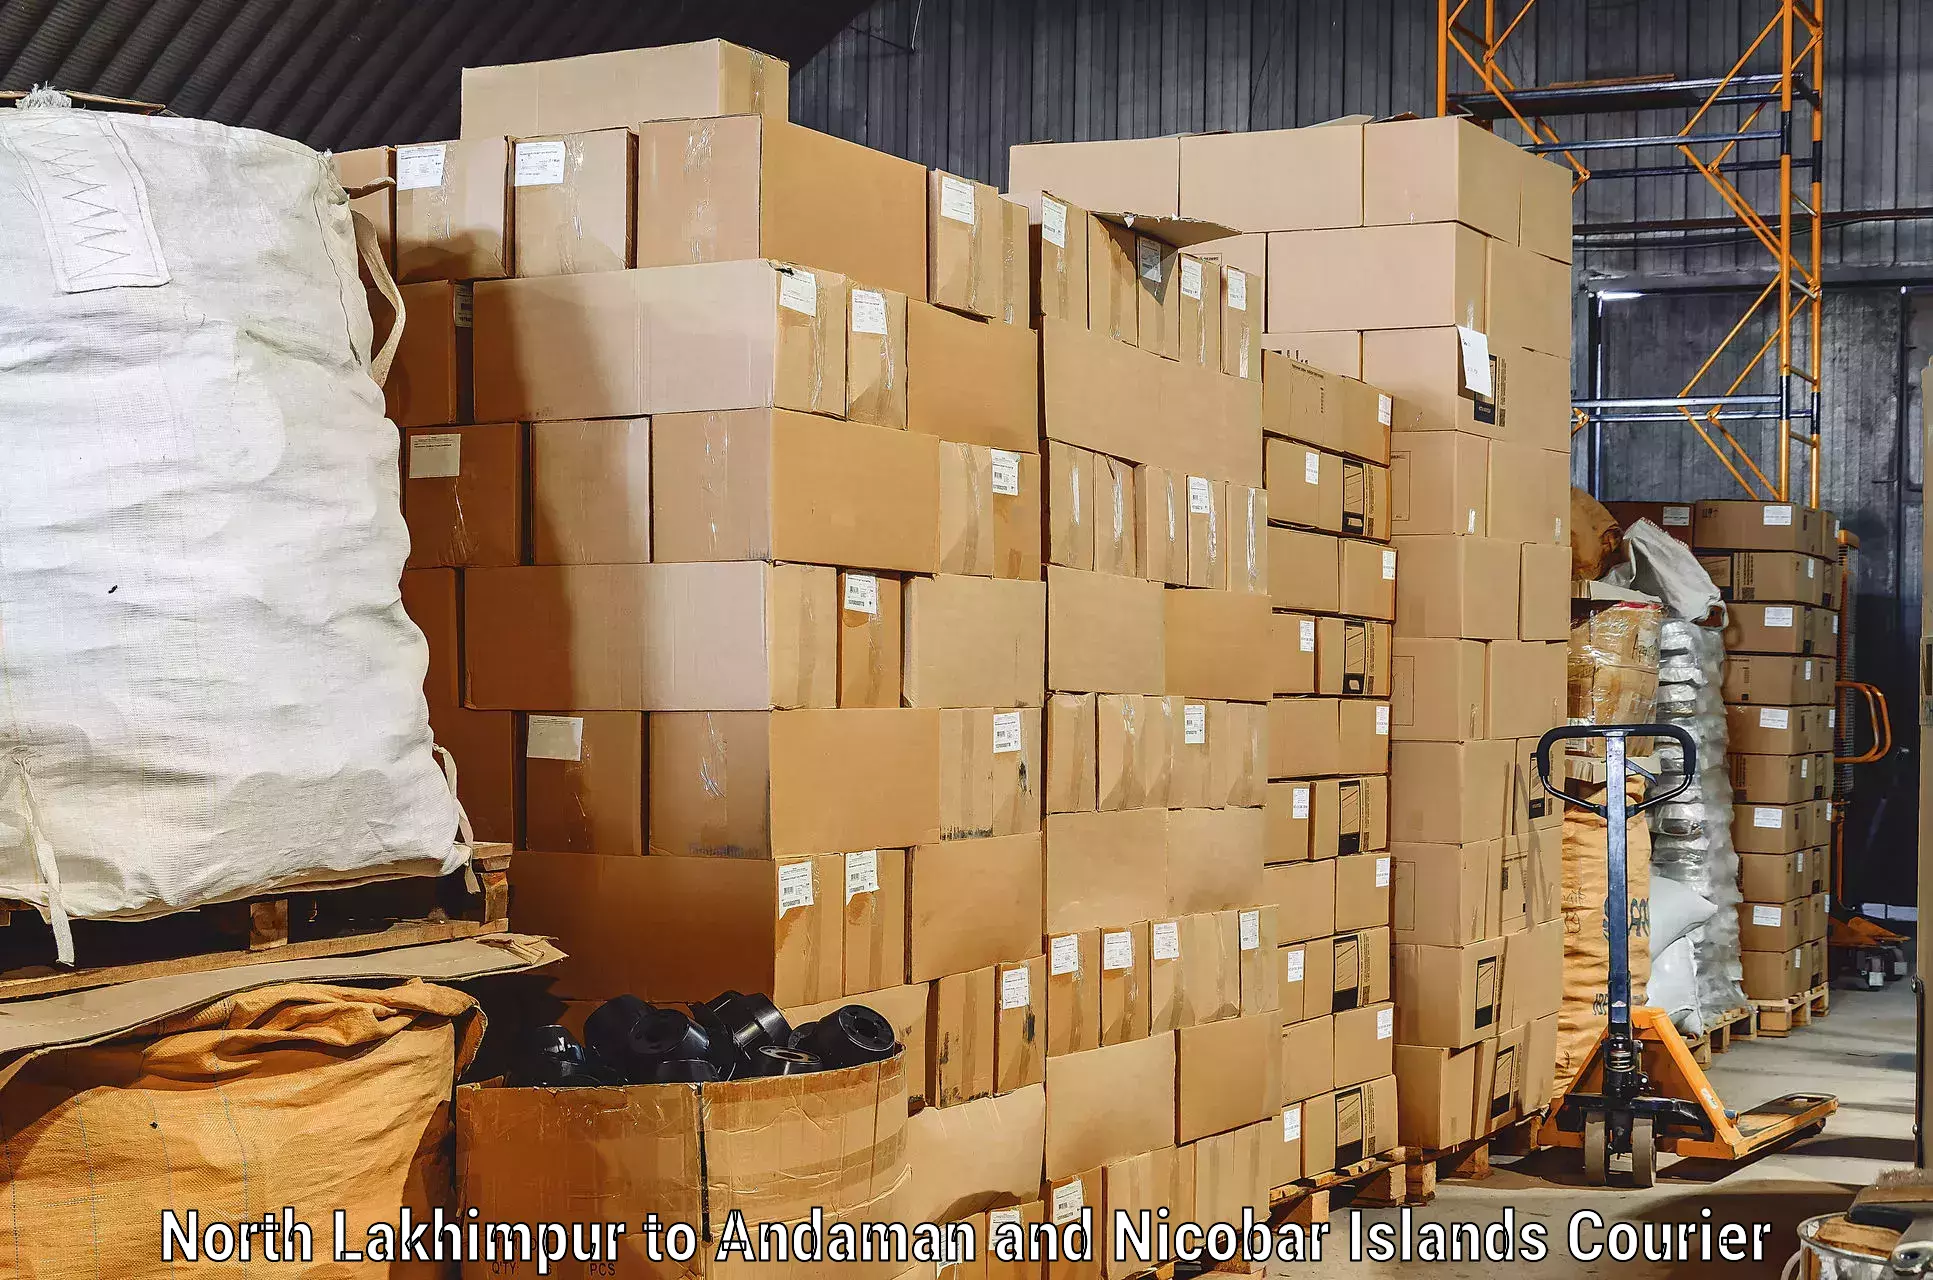 Furniture transport and storage North Lakhimpur to Nicobar